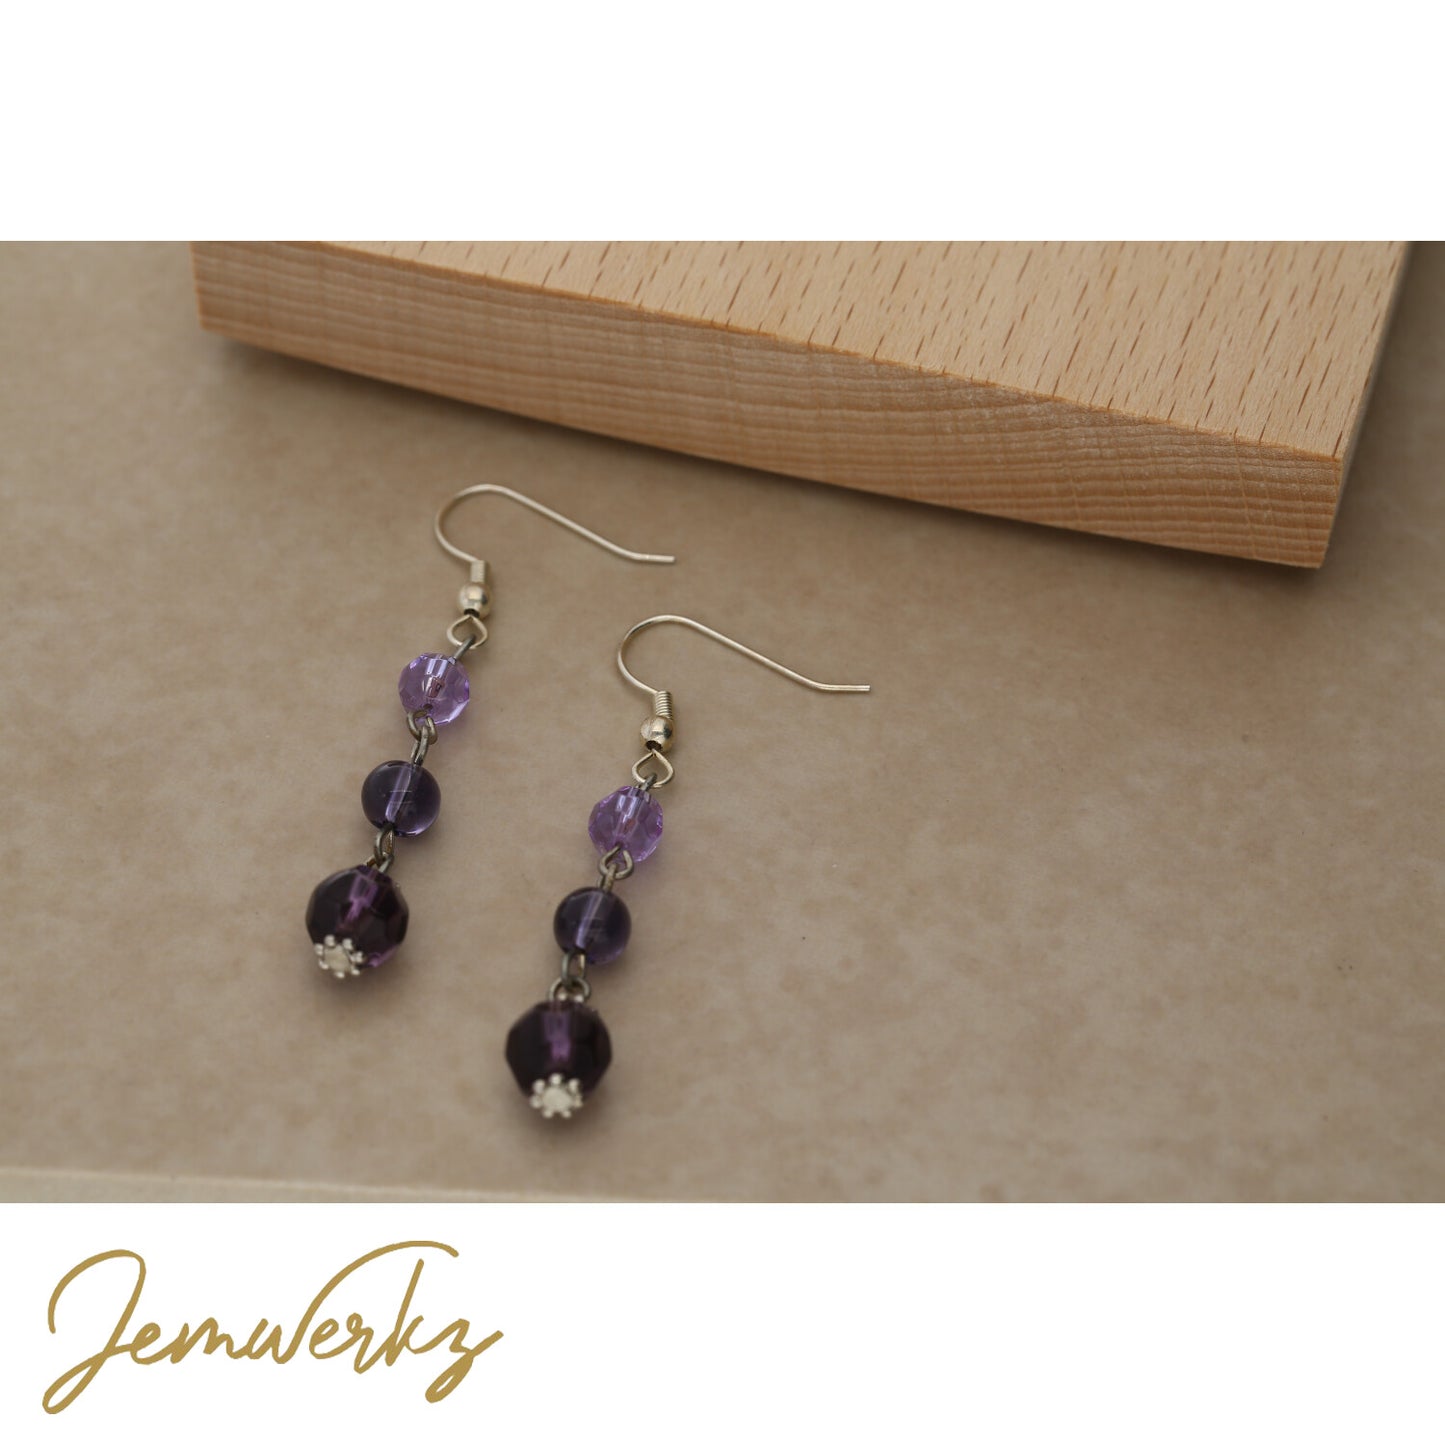 Beads Gemstone Earrings | Earrings Handmade | jemwerkz